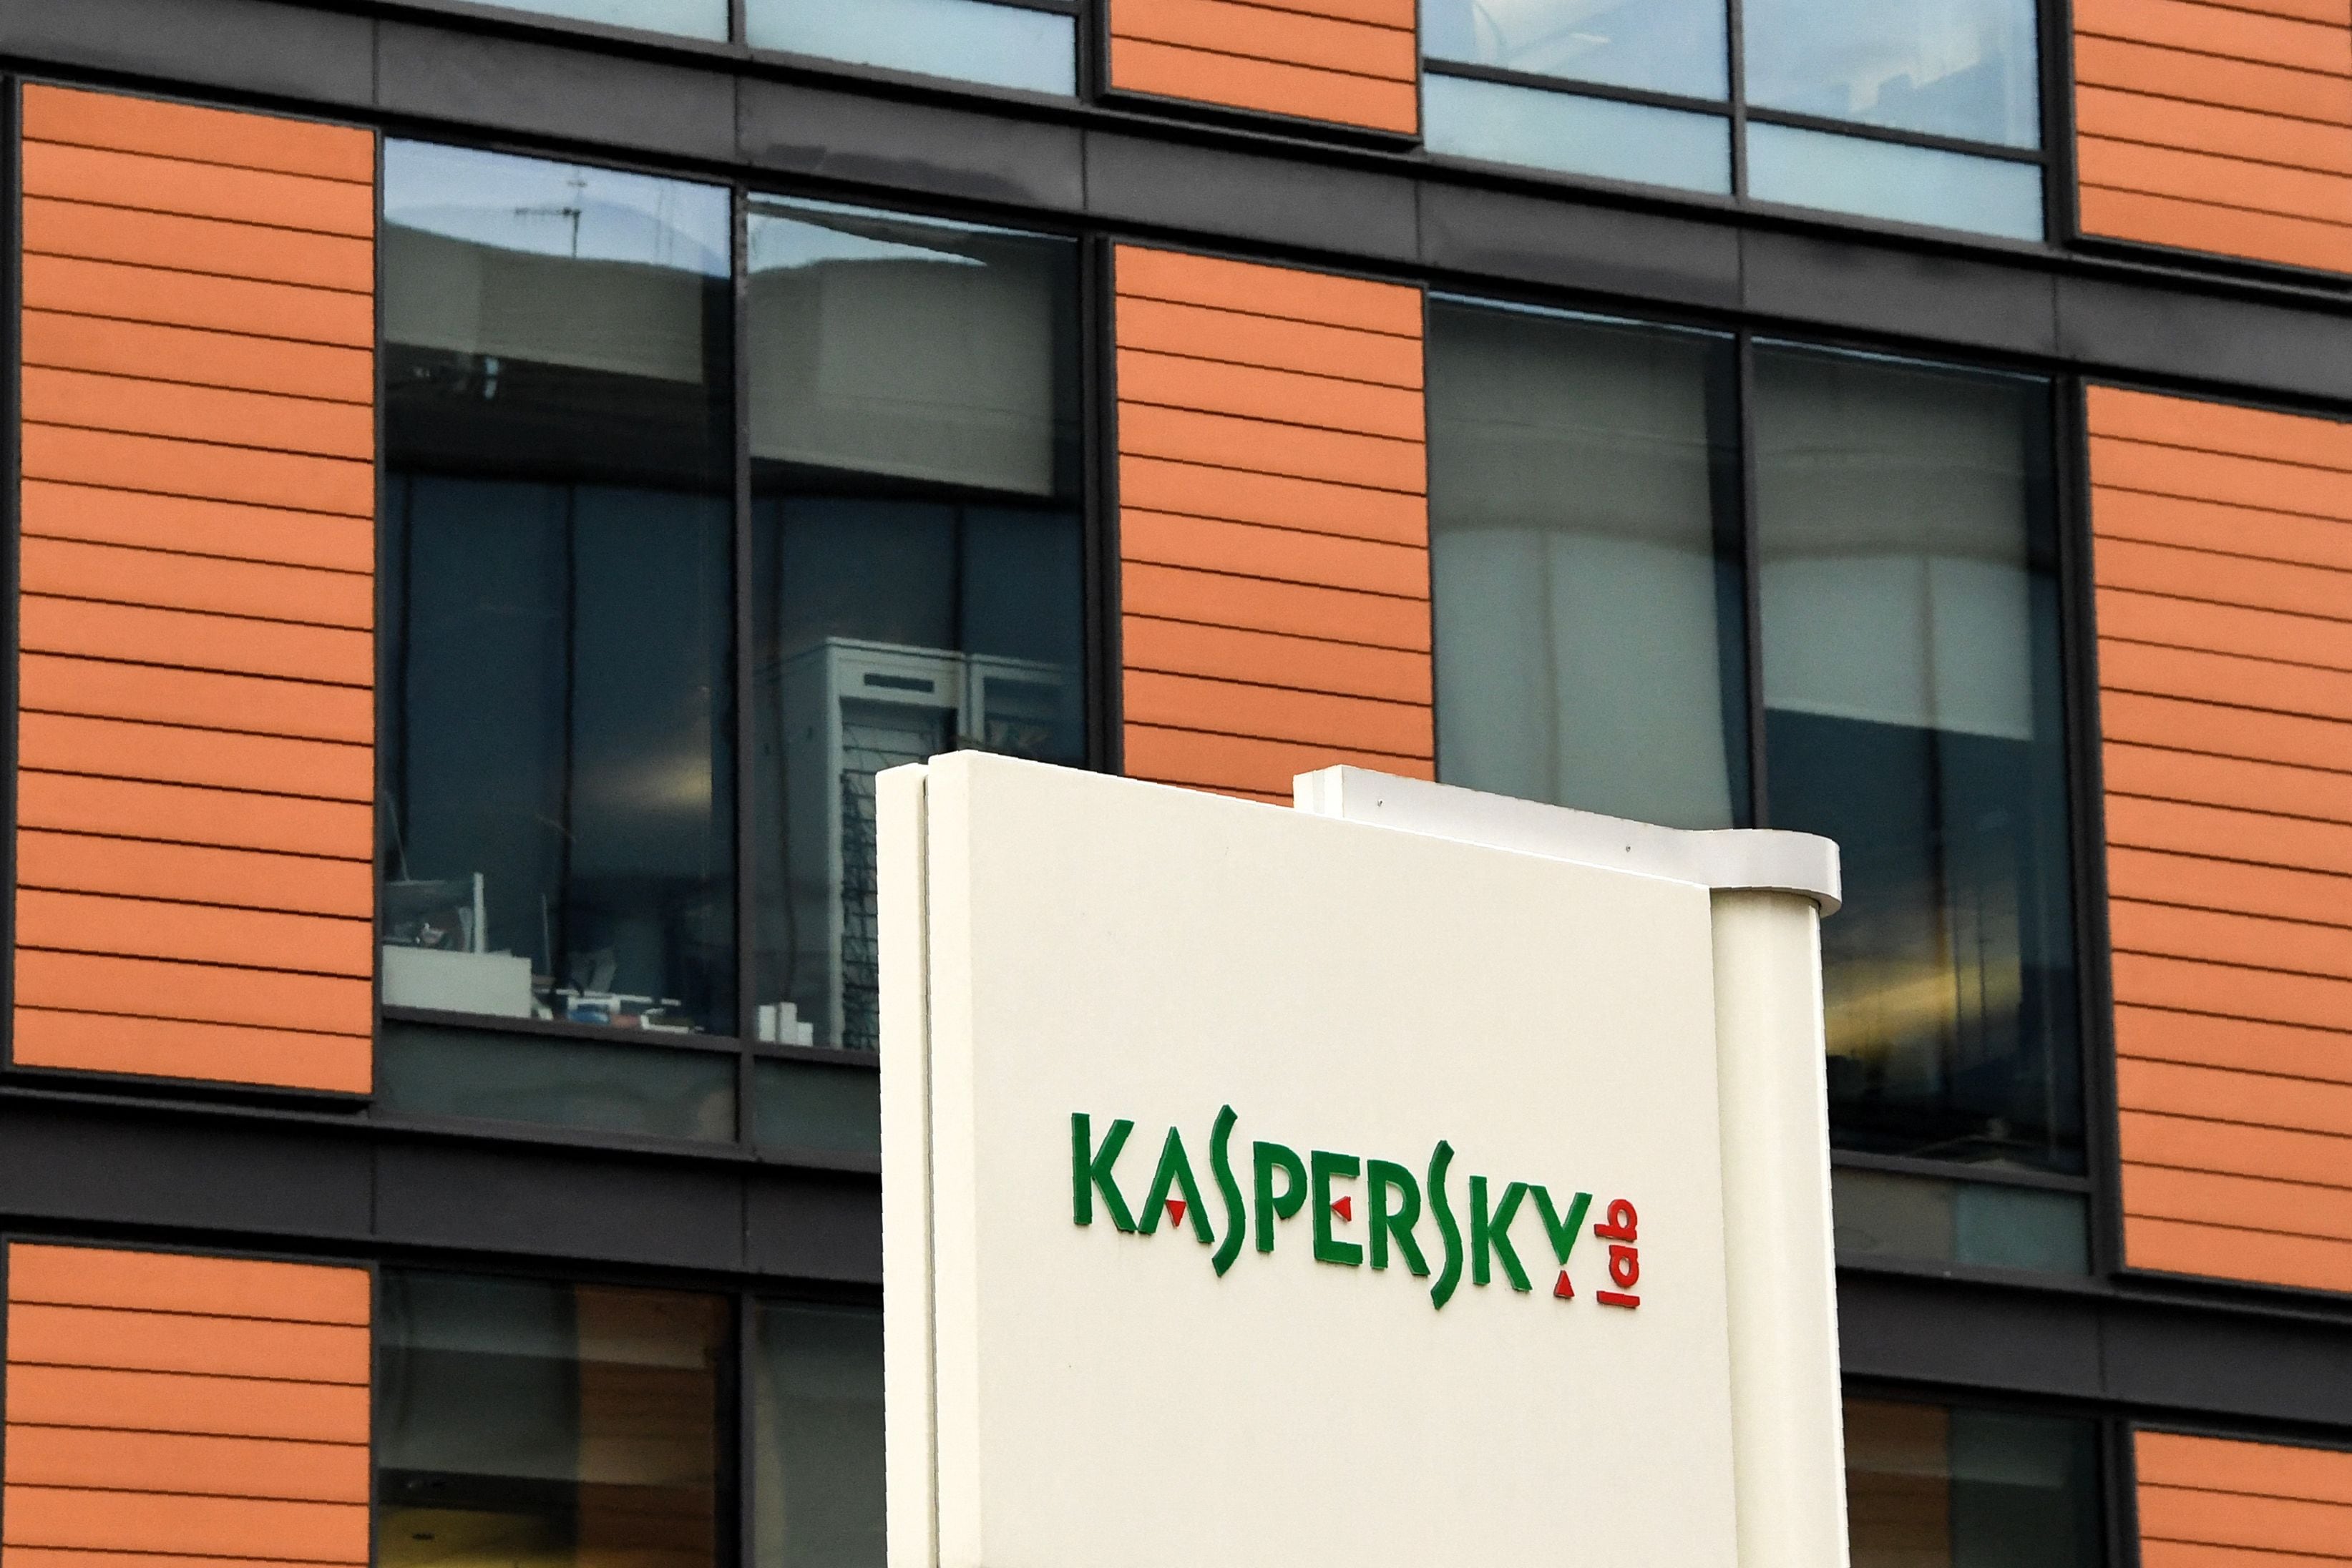 Estados Unidos prohibió a la empresa de ciberseguridad Kaspersky, con sede en Rusia, proporcionar sus populares productos antivirus. en el país, anunció el Departamento de Comercio de Estados Unidos. (Foto de Kirill KUDRYAVTSEV / AFP)